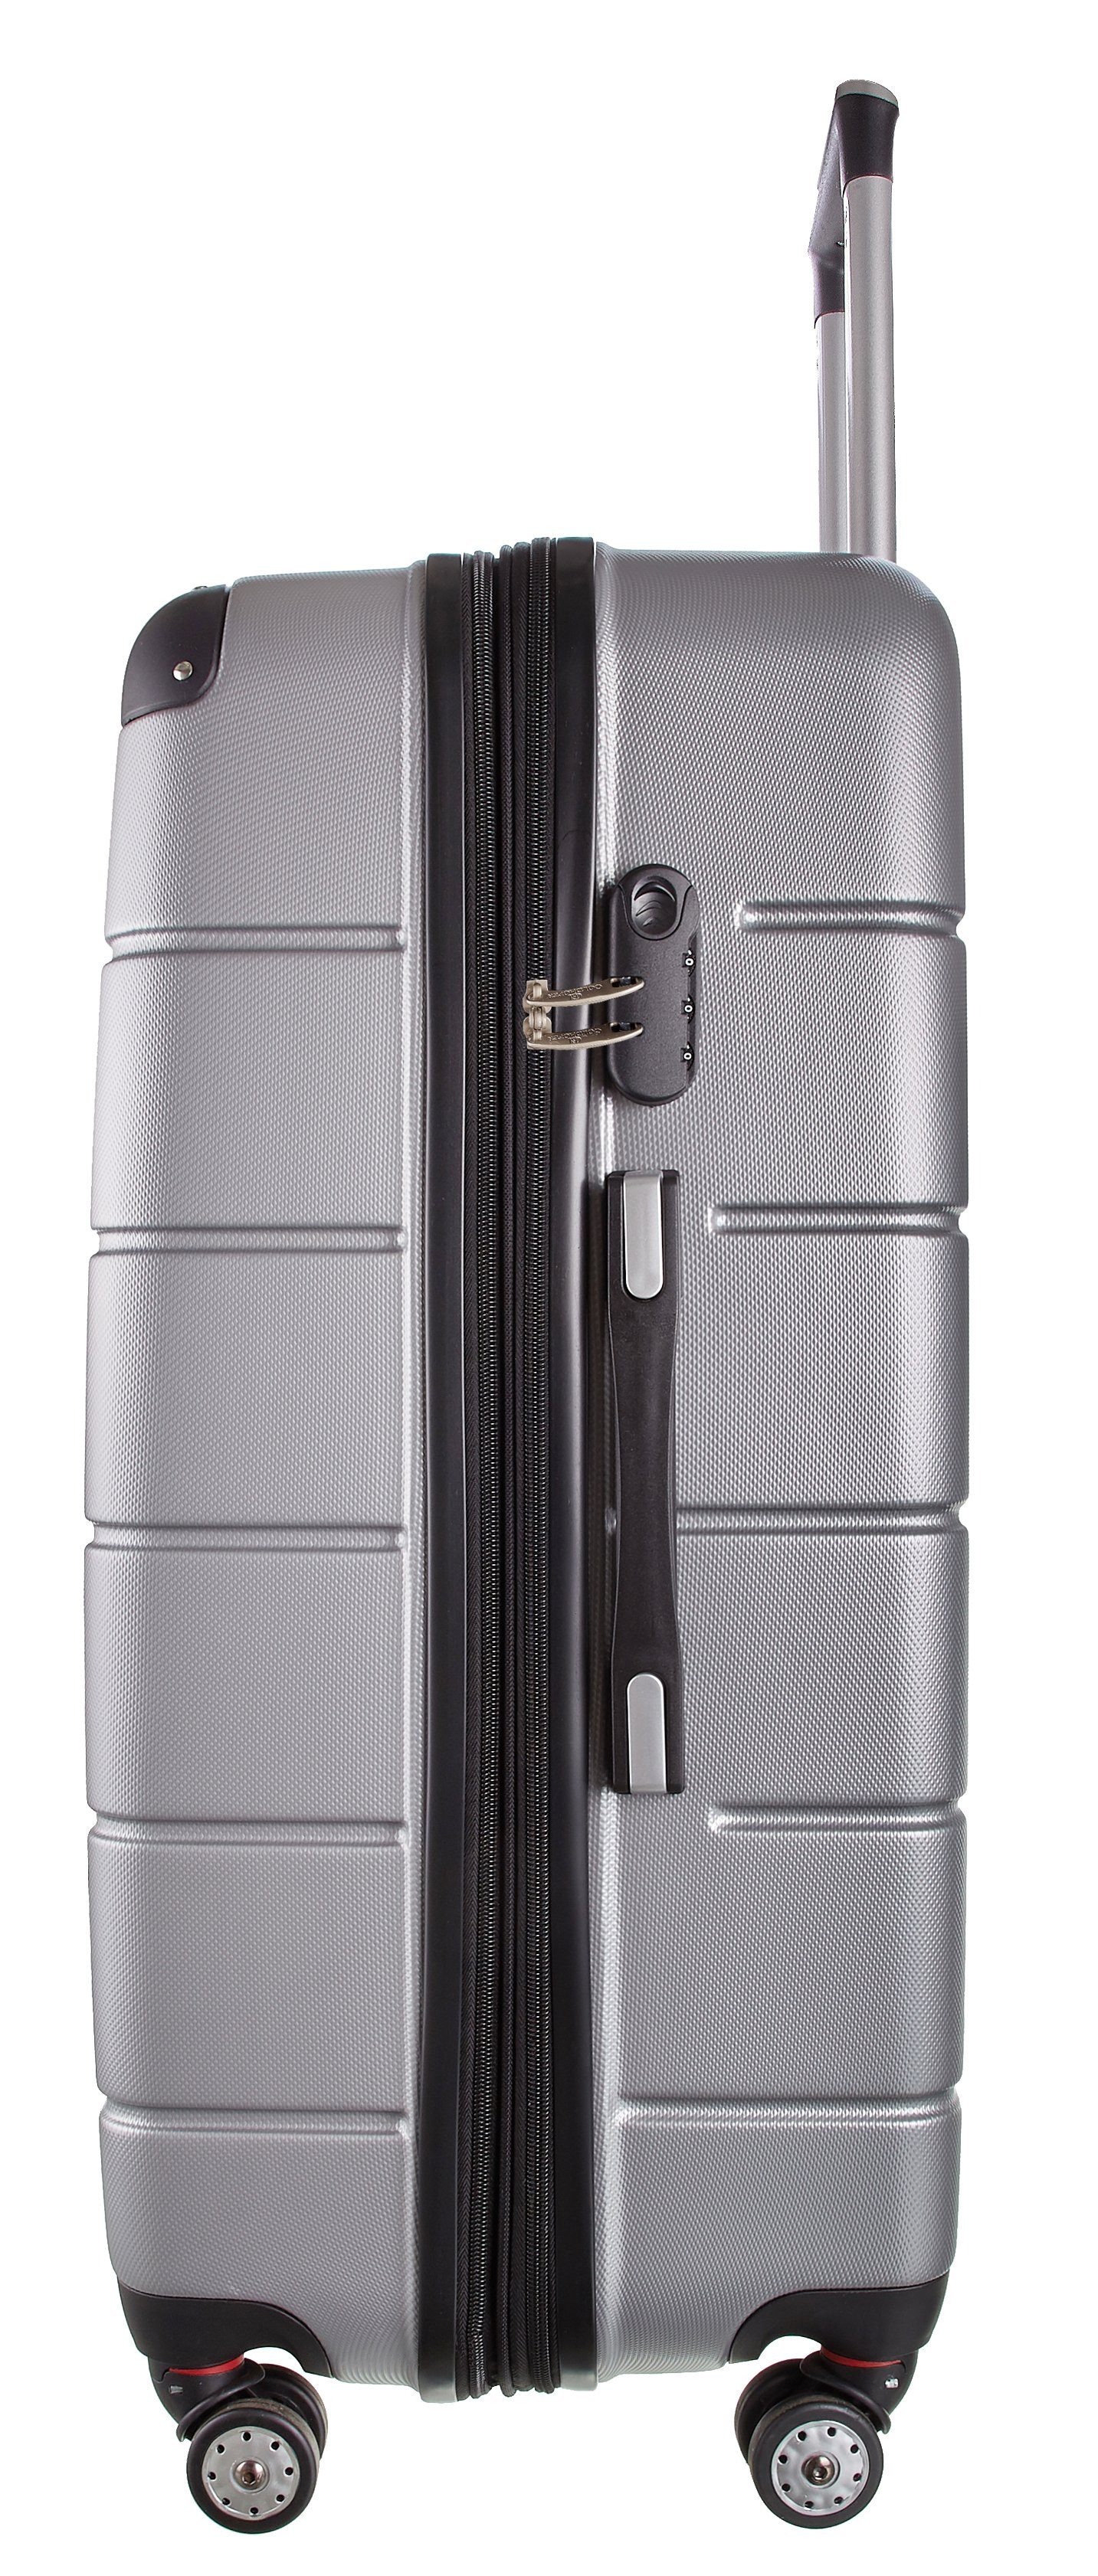 Goldhofer Kofferset verschiedene Material - Farben & Größen Grau V1 in 360° Leichtlaufrollen, ABS 3 Wasserabweisend (Set, TLG), Außen mit 3 Modelle